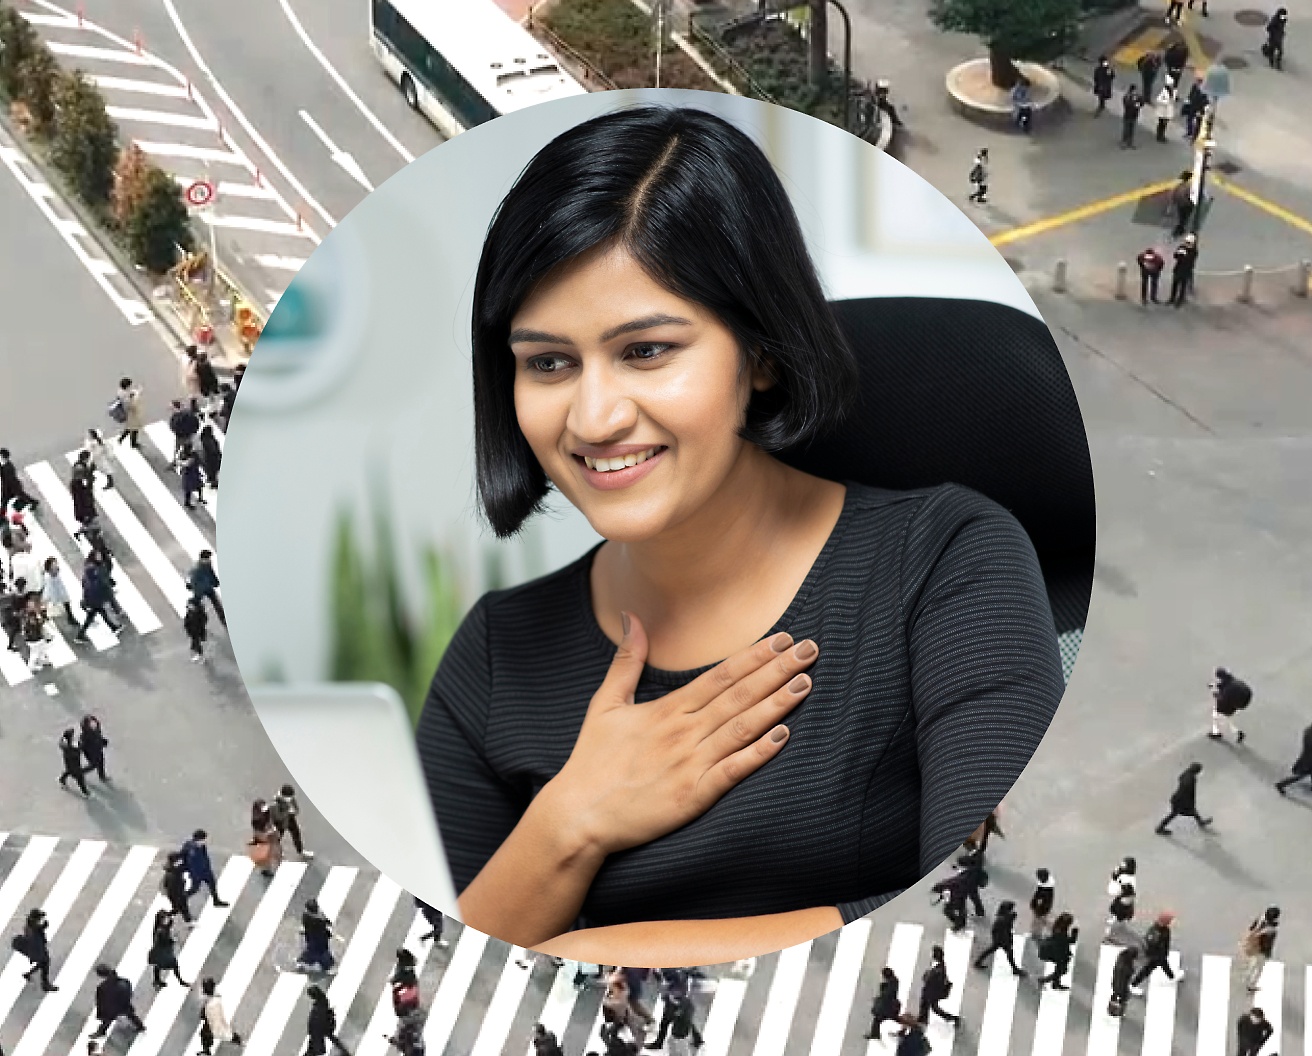 אישה מחזיקה את ידה על החזה שלה בזמן שעובדת על המחשב הנישא שלה, תמונת הרקע מוגדרת כצומת כבישים עם אנשים שעוברים